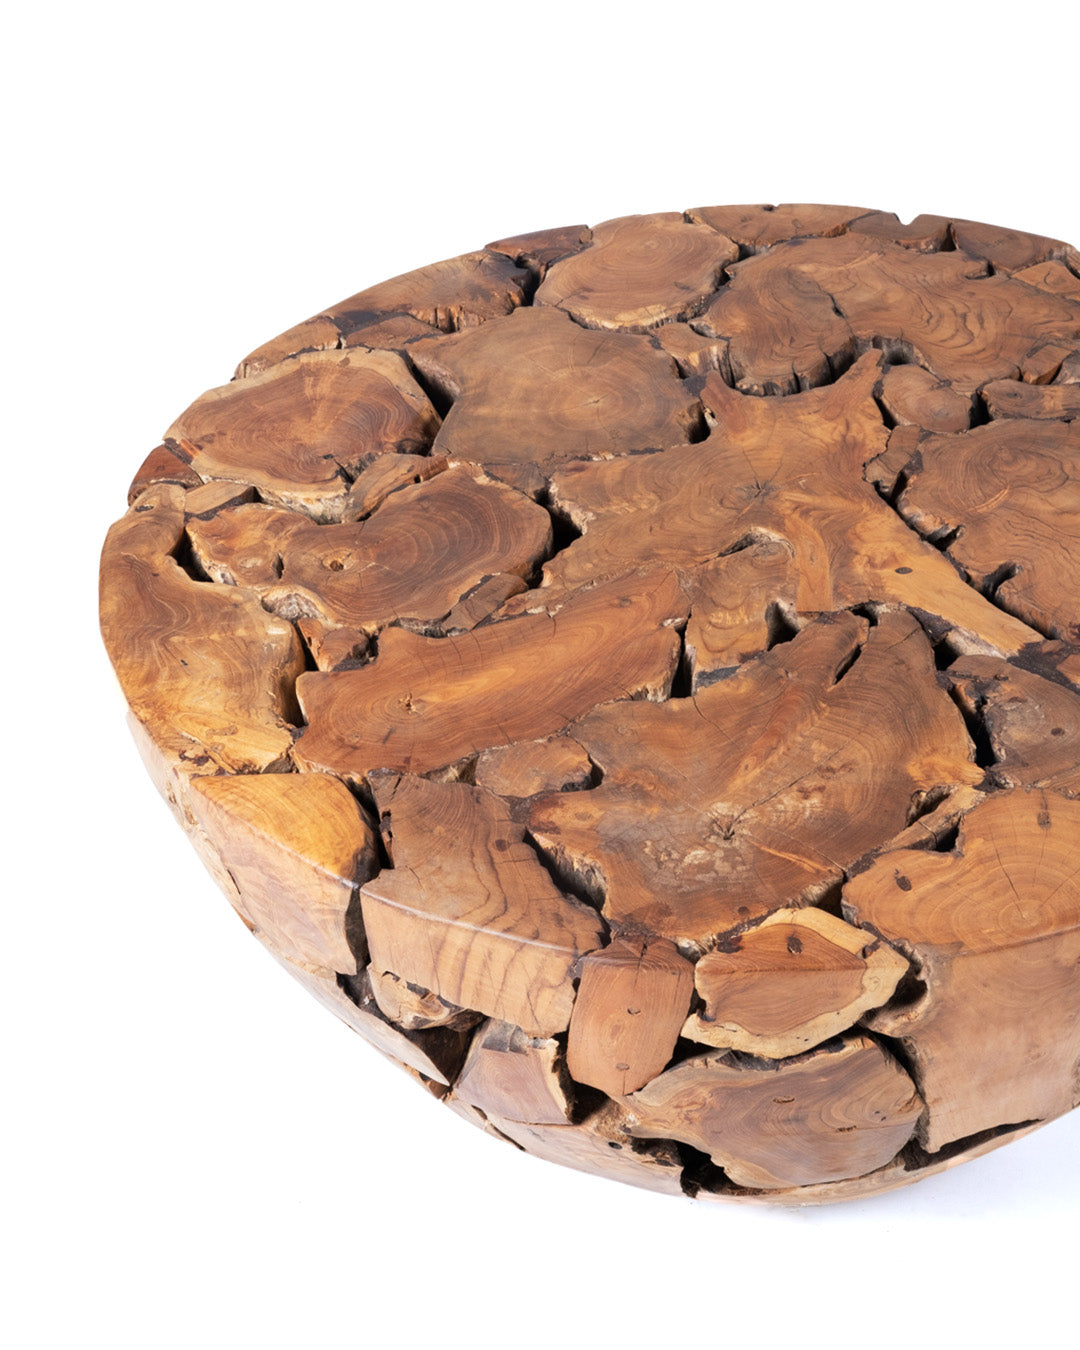 Mesa de centro de madera maciza natural de samán rustica Banbalo redonda, hecha a mano con acabado natural,43 cm Alto 100 cm Diámetro , origen Indonesia